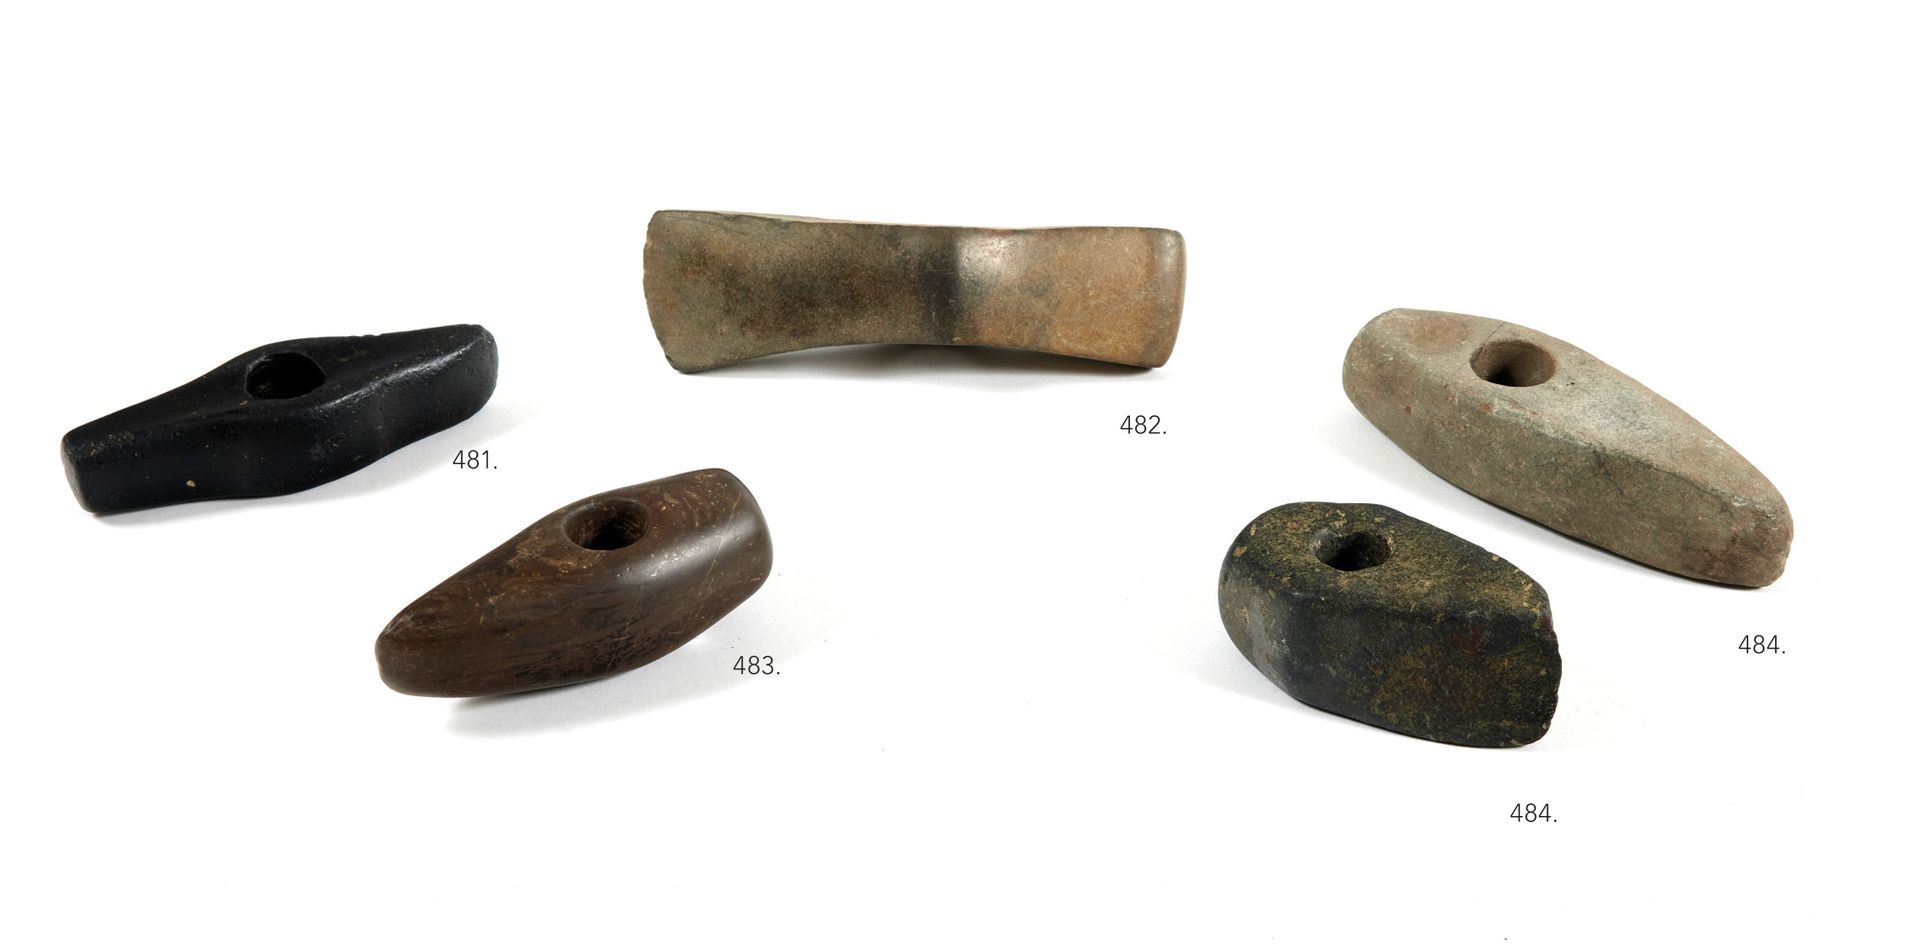 Hache-marteau 锤子-斧子

两侧有咽喉。

堇青石。边缘略显暗淡，鞋跟处有小缺口。

丹麦或德国，Chalcolithic。

长13,5厘米